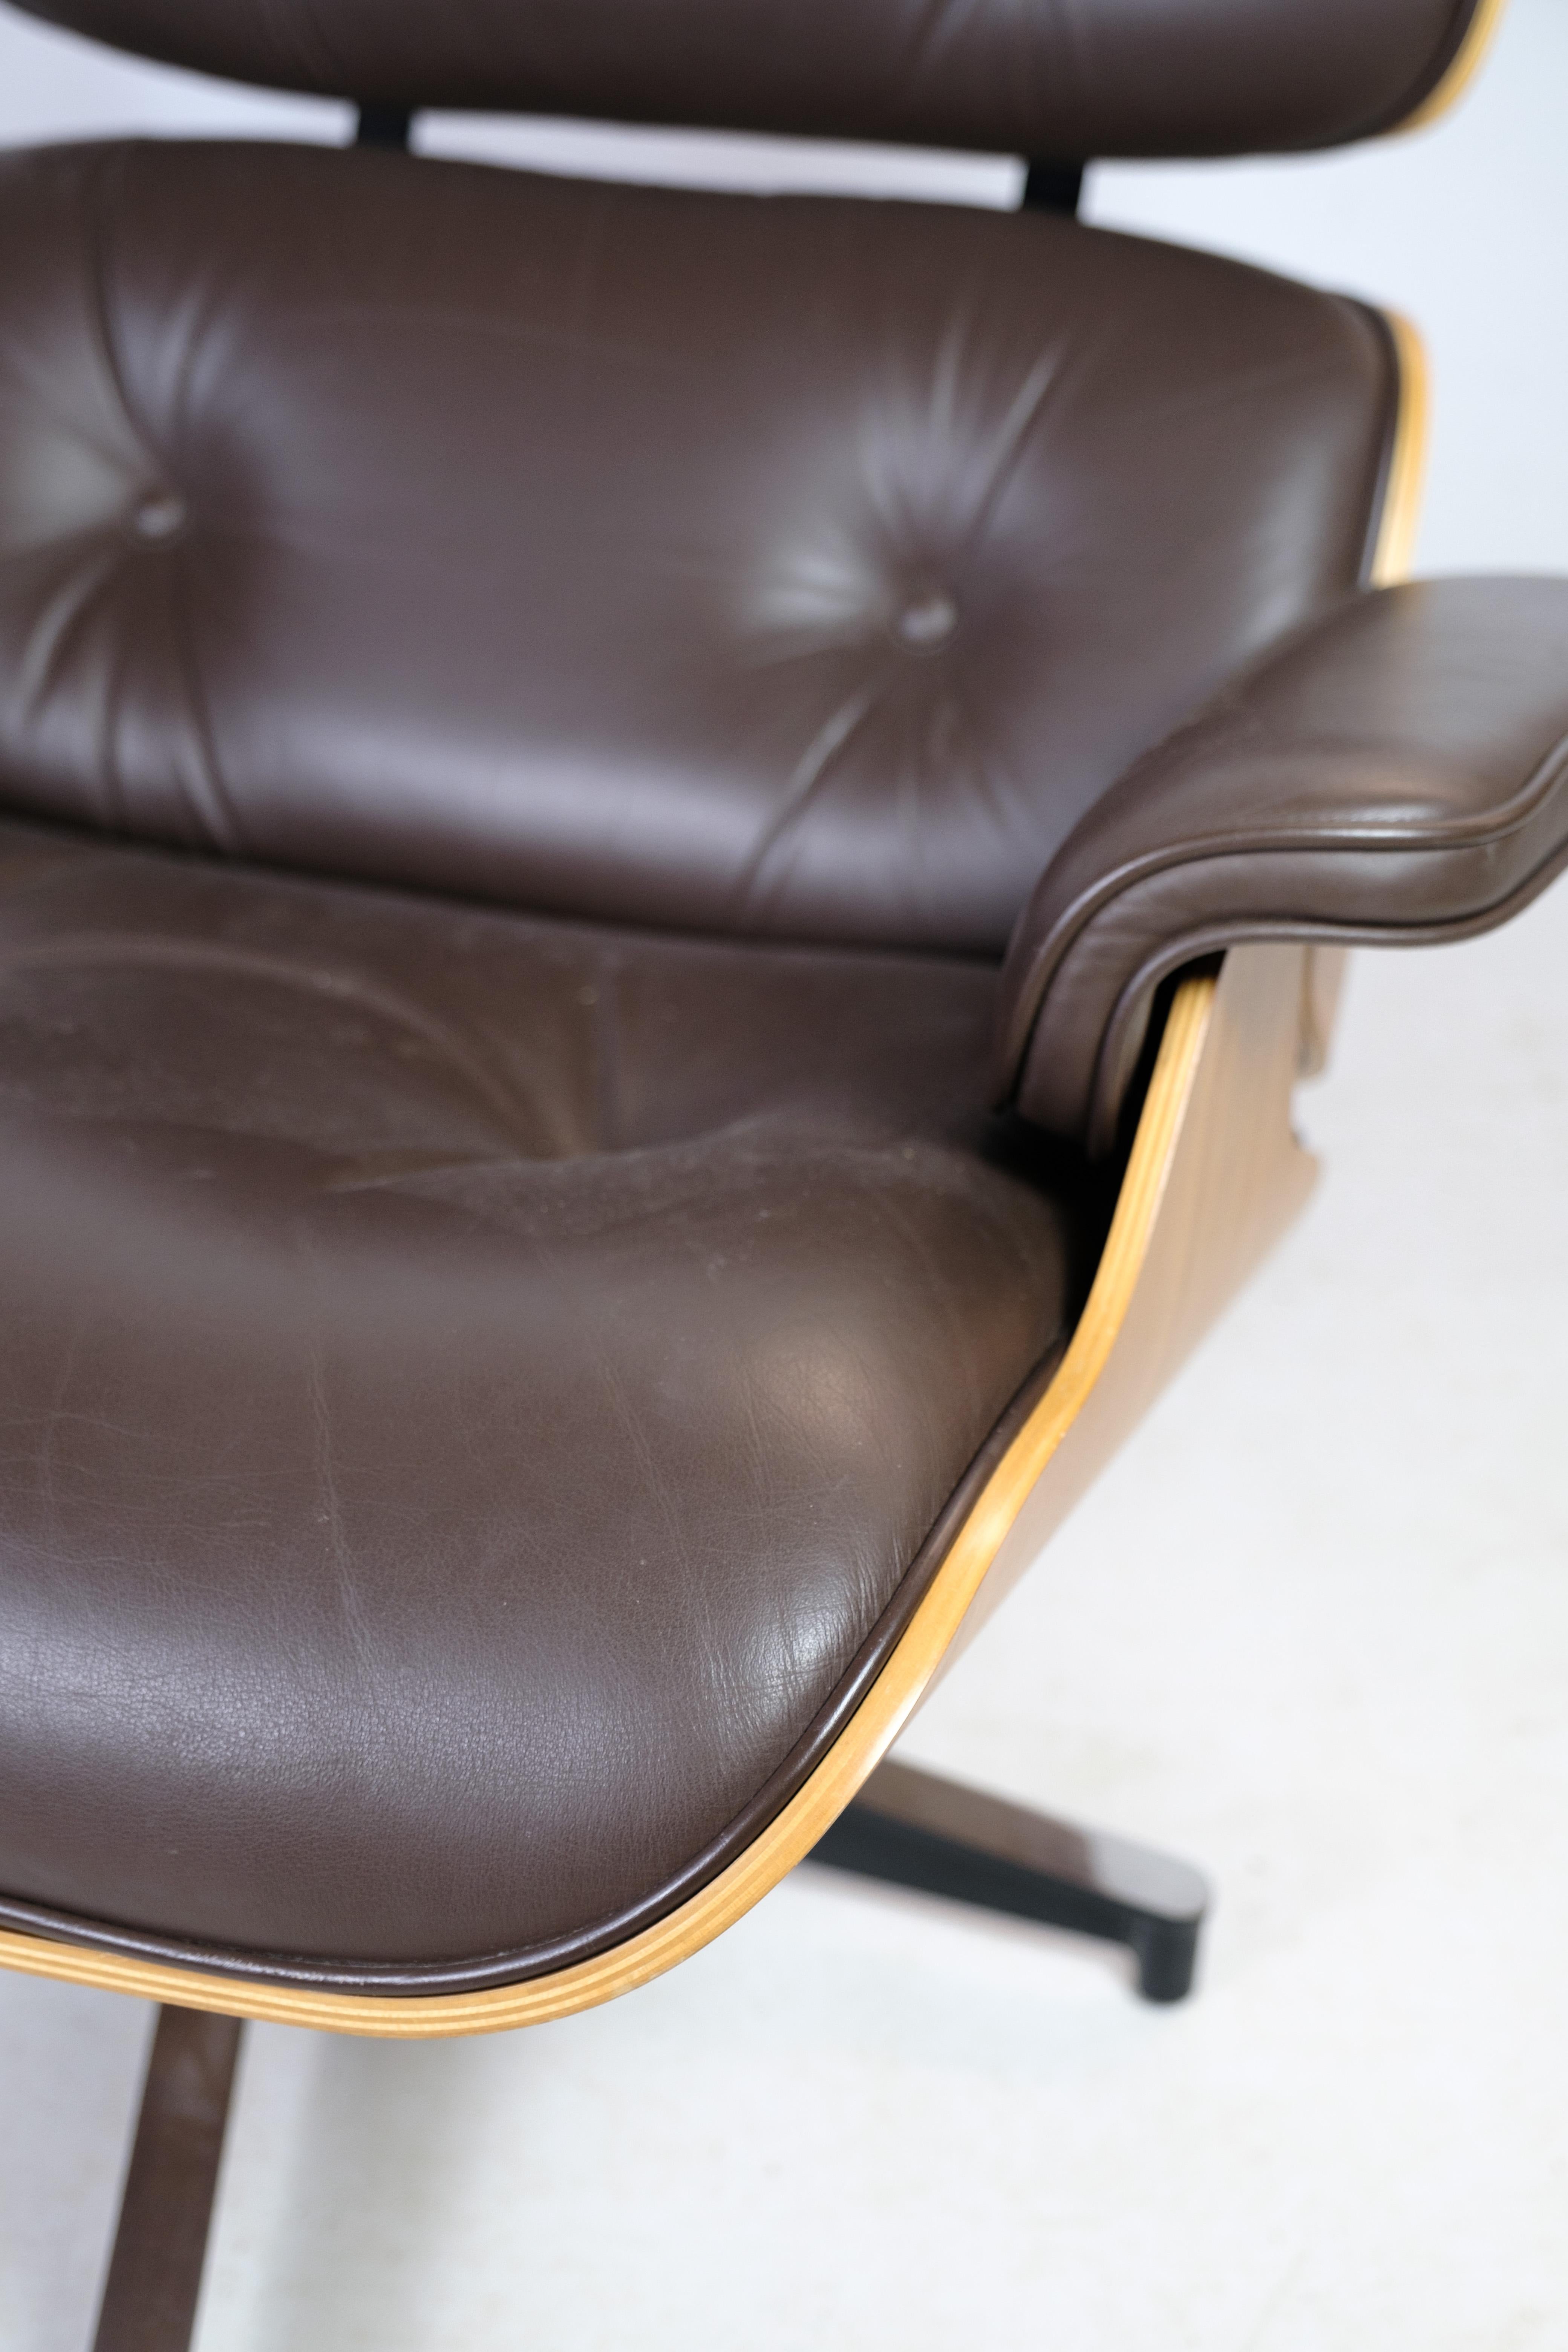 La chaise longue Charles Eames en cuir brun et noyer clair, produite par Herman Miller. Conçu en 1958 et ramené à la vie en 2007, ce meuble emblématique représente l'élégance intemporelle et un savoir-faire exceptionnel.

La chaise longue Charles